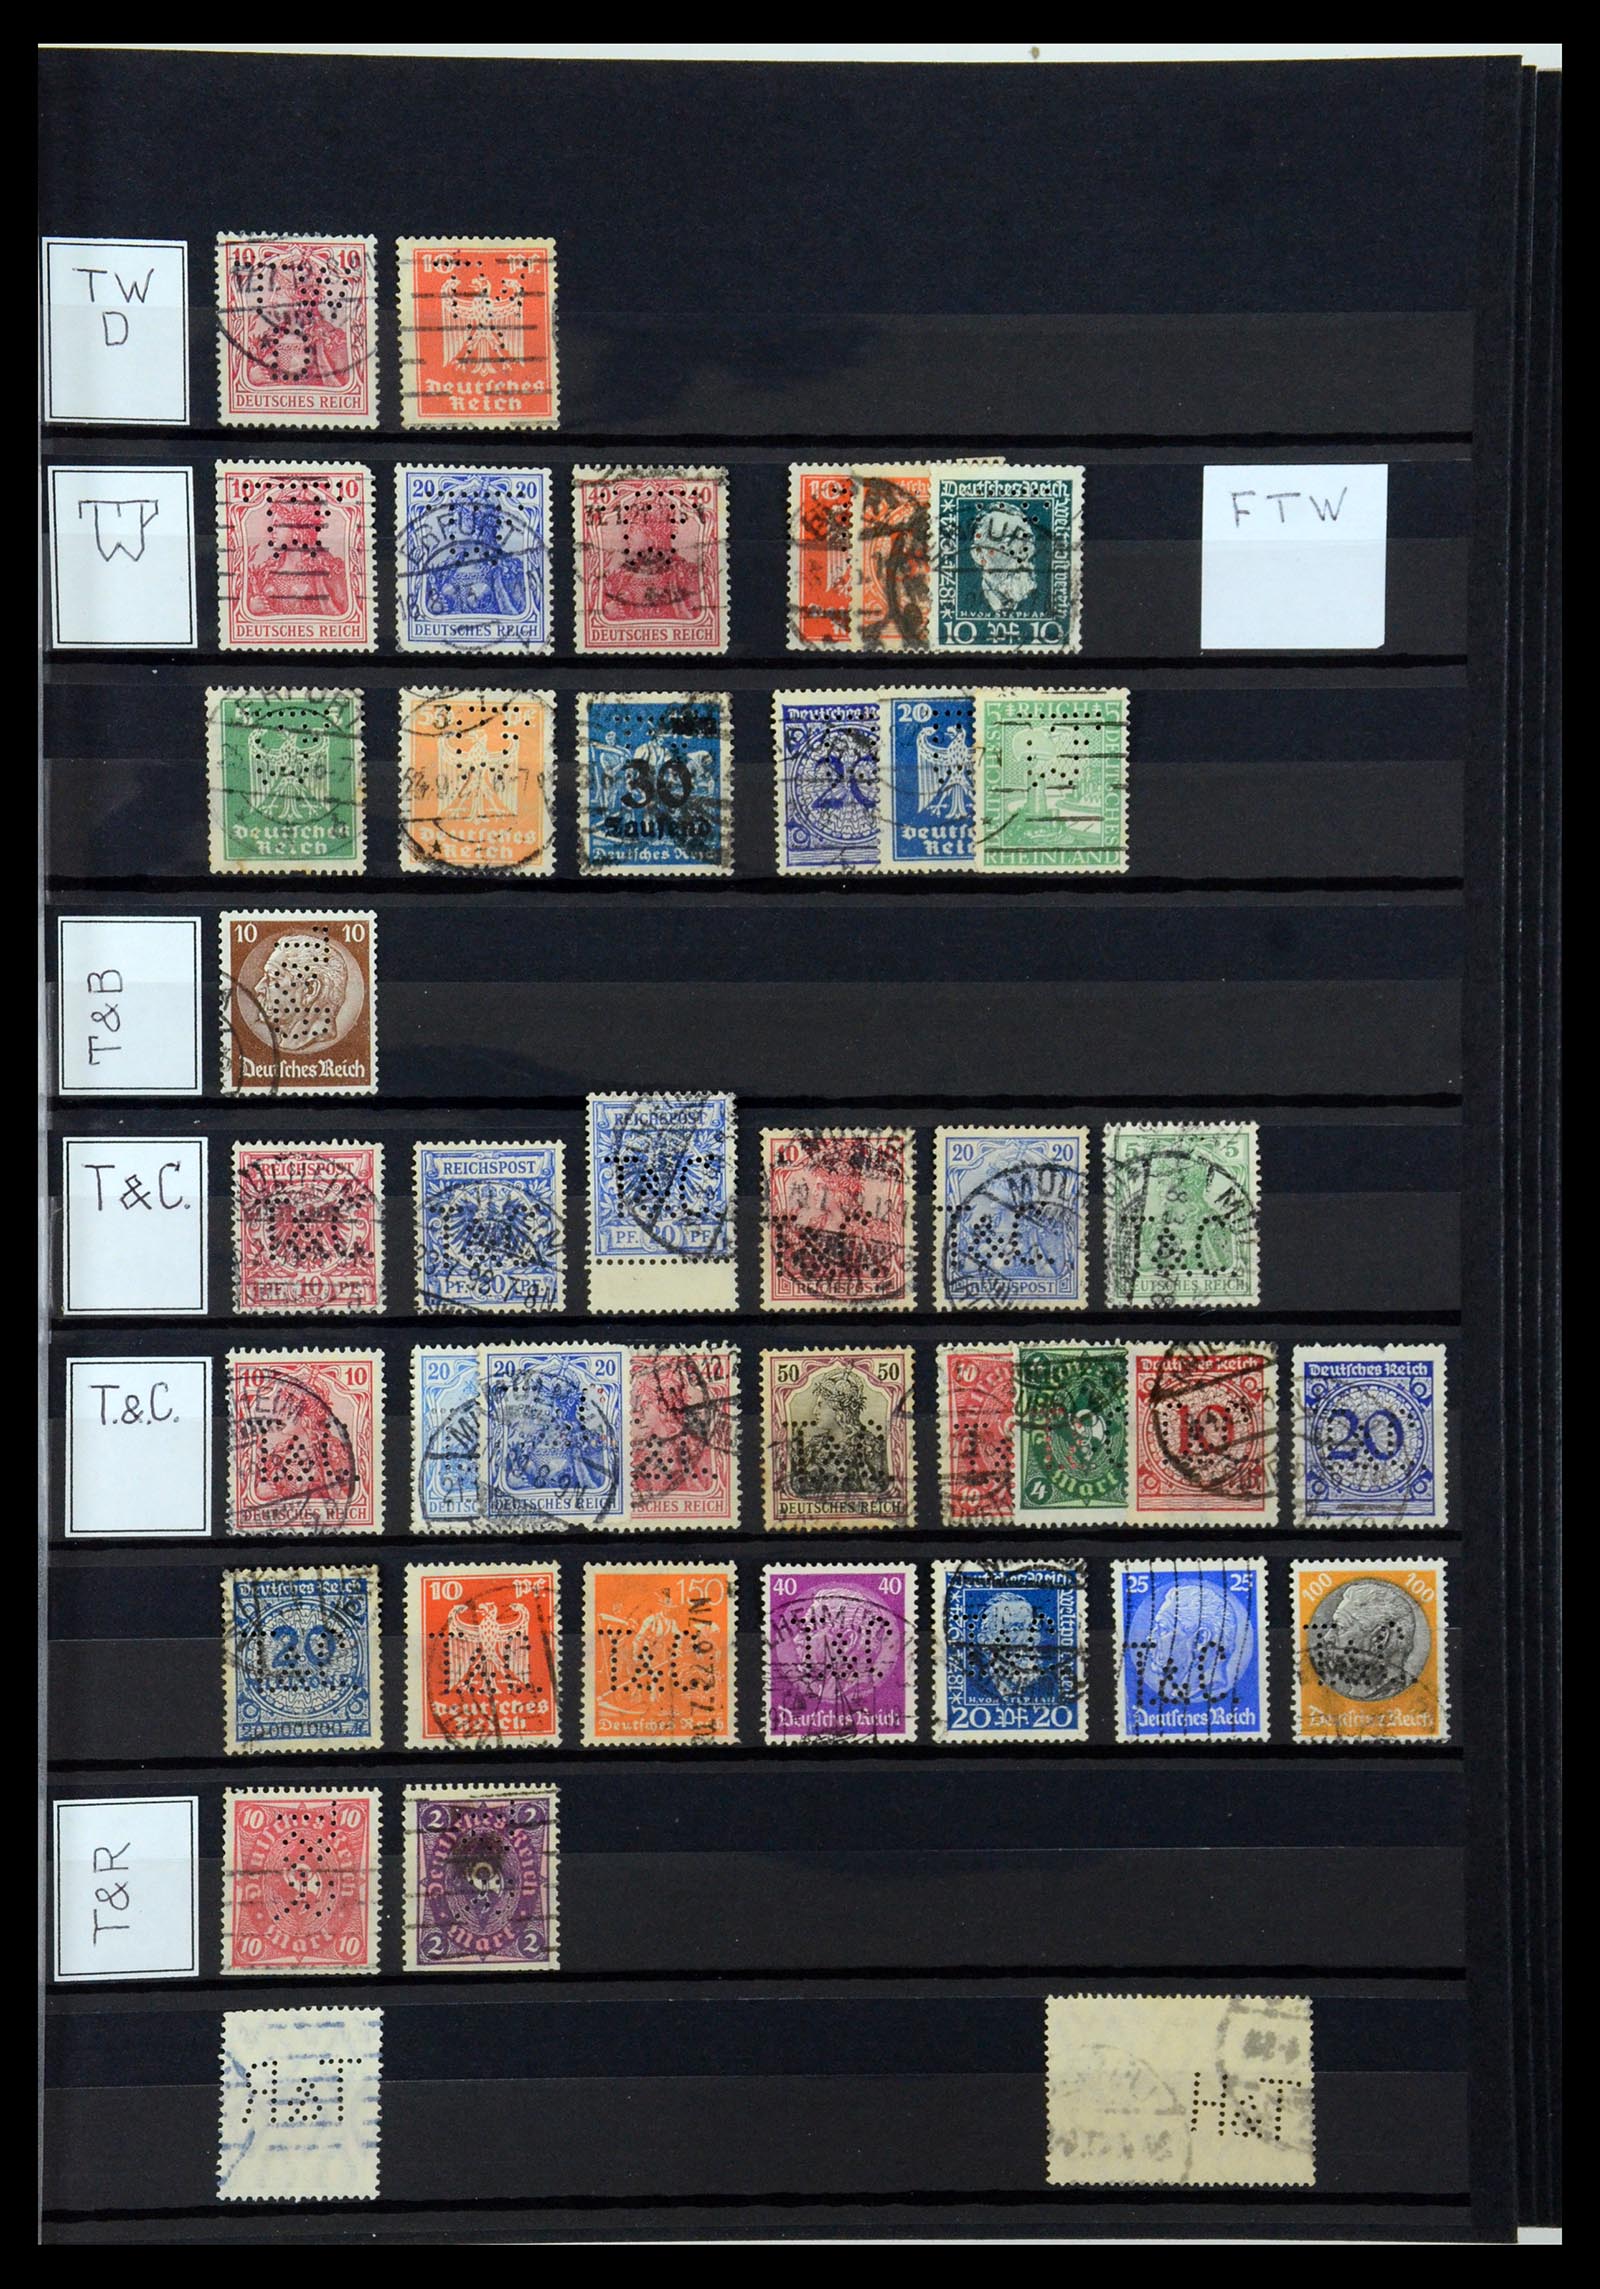 36405 316 - Stamp collection 36405 German Reich perfins 1880-1945.